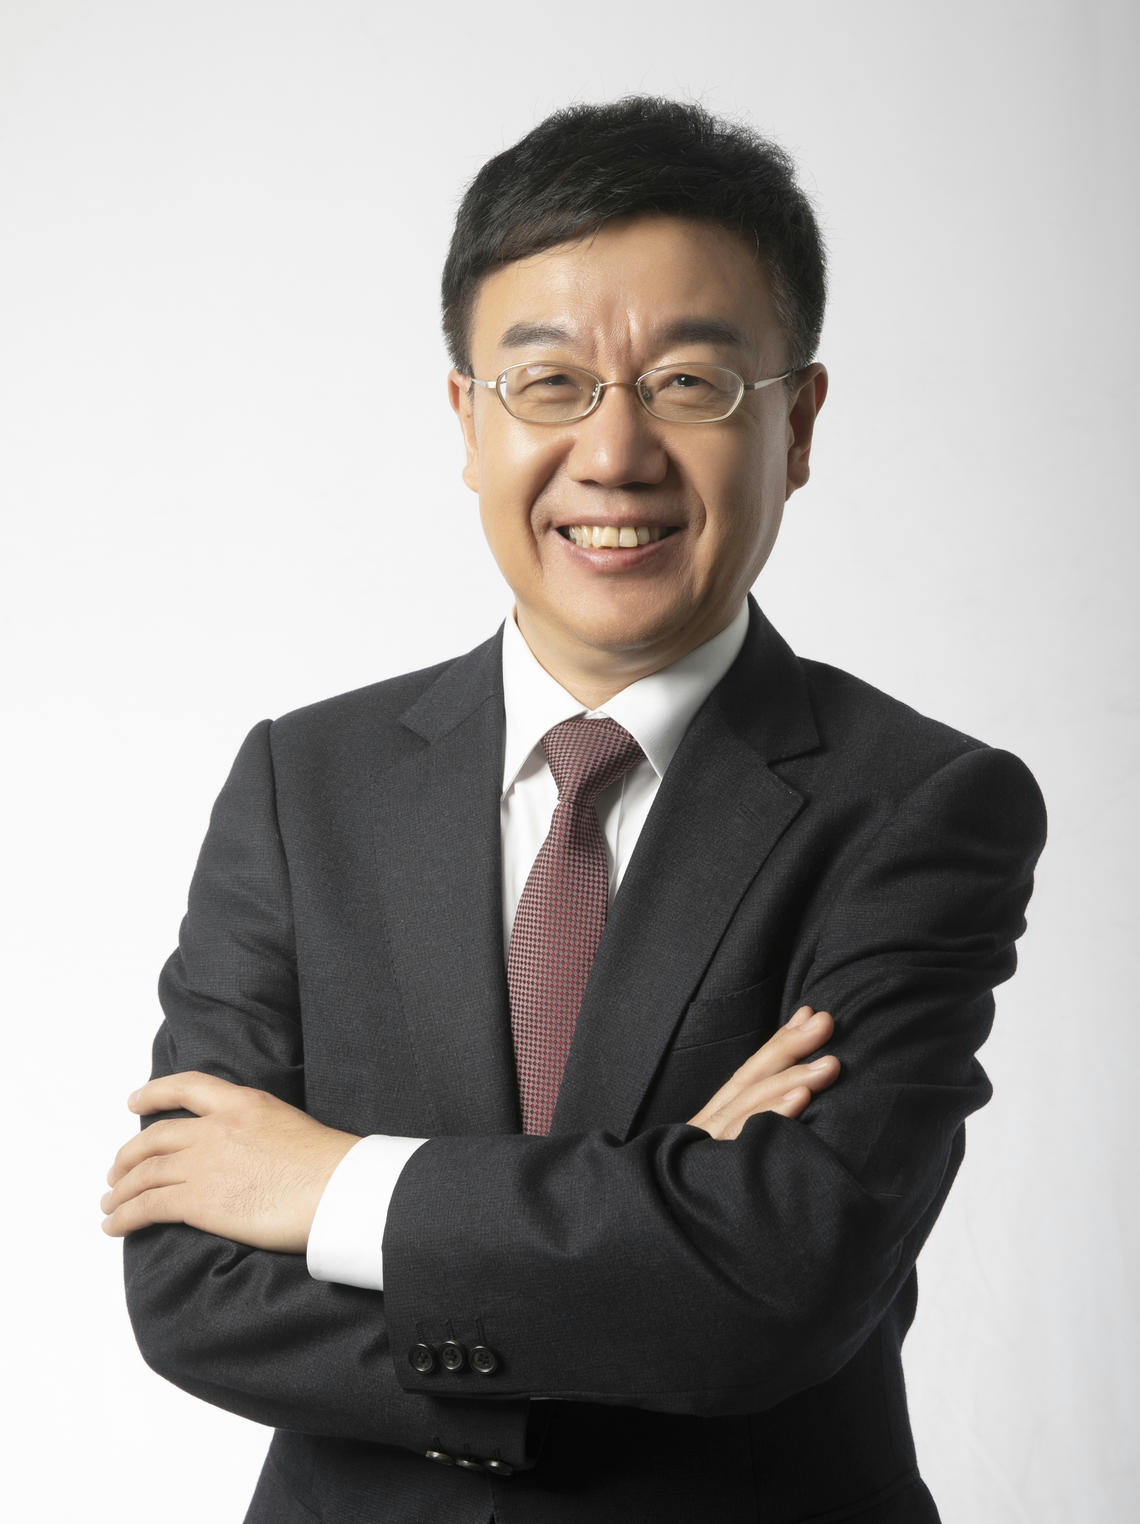 Dr. Yang Zhao